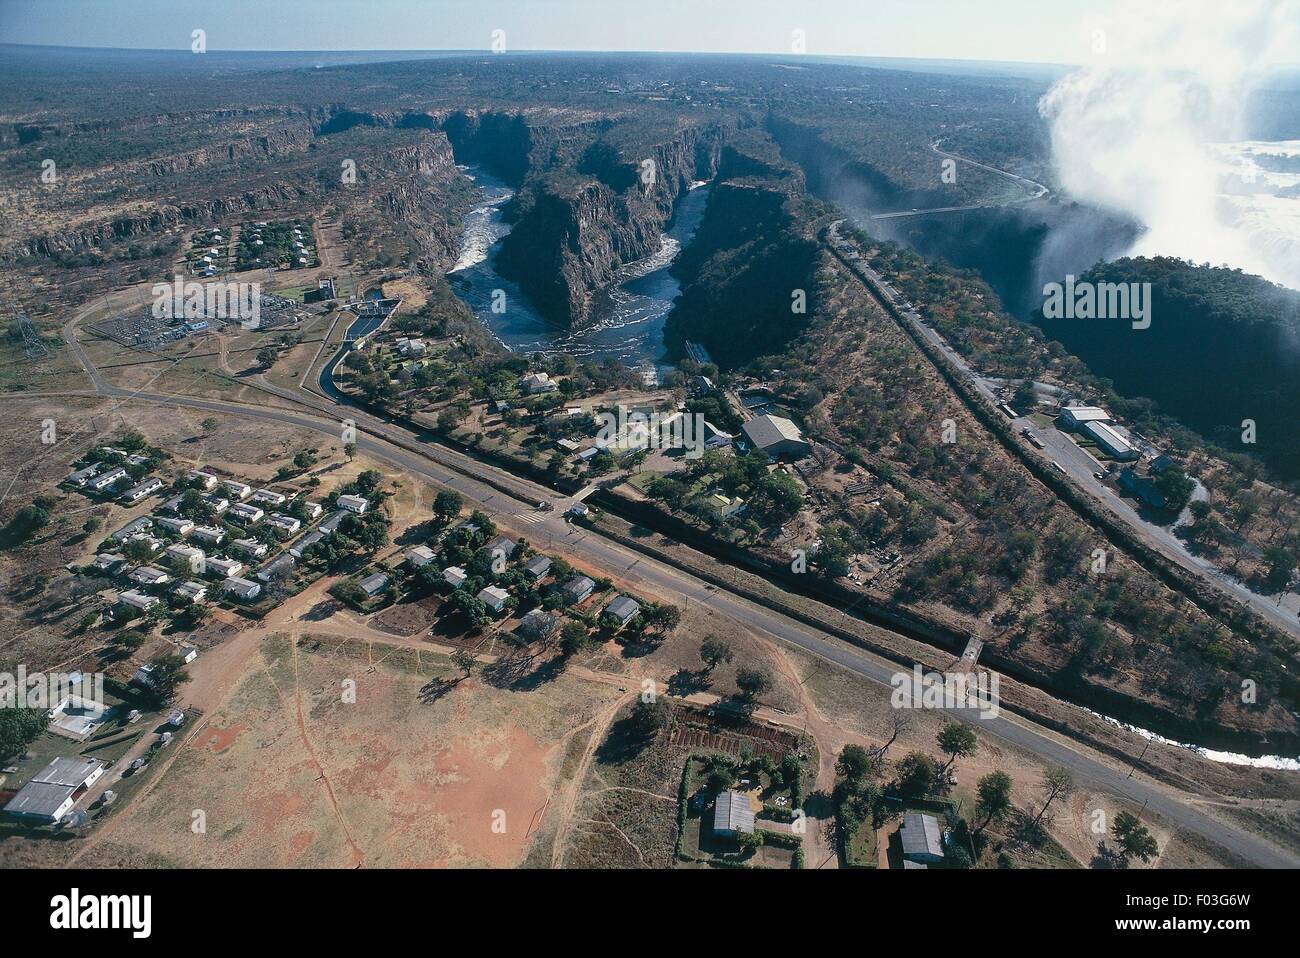 Vue aérienne des installations touristiques, près de Victoria Falls, fleuve Zambèze (Liste du patrimoine mondial de l'UNESCO, 1989) - Parc National de Mosi-oa-Tunya, Zambie Banque D'Images